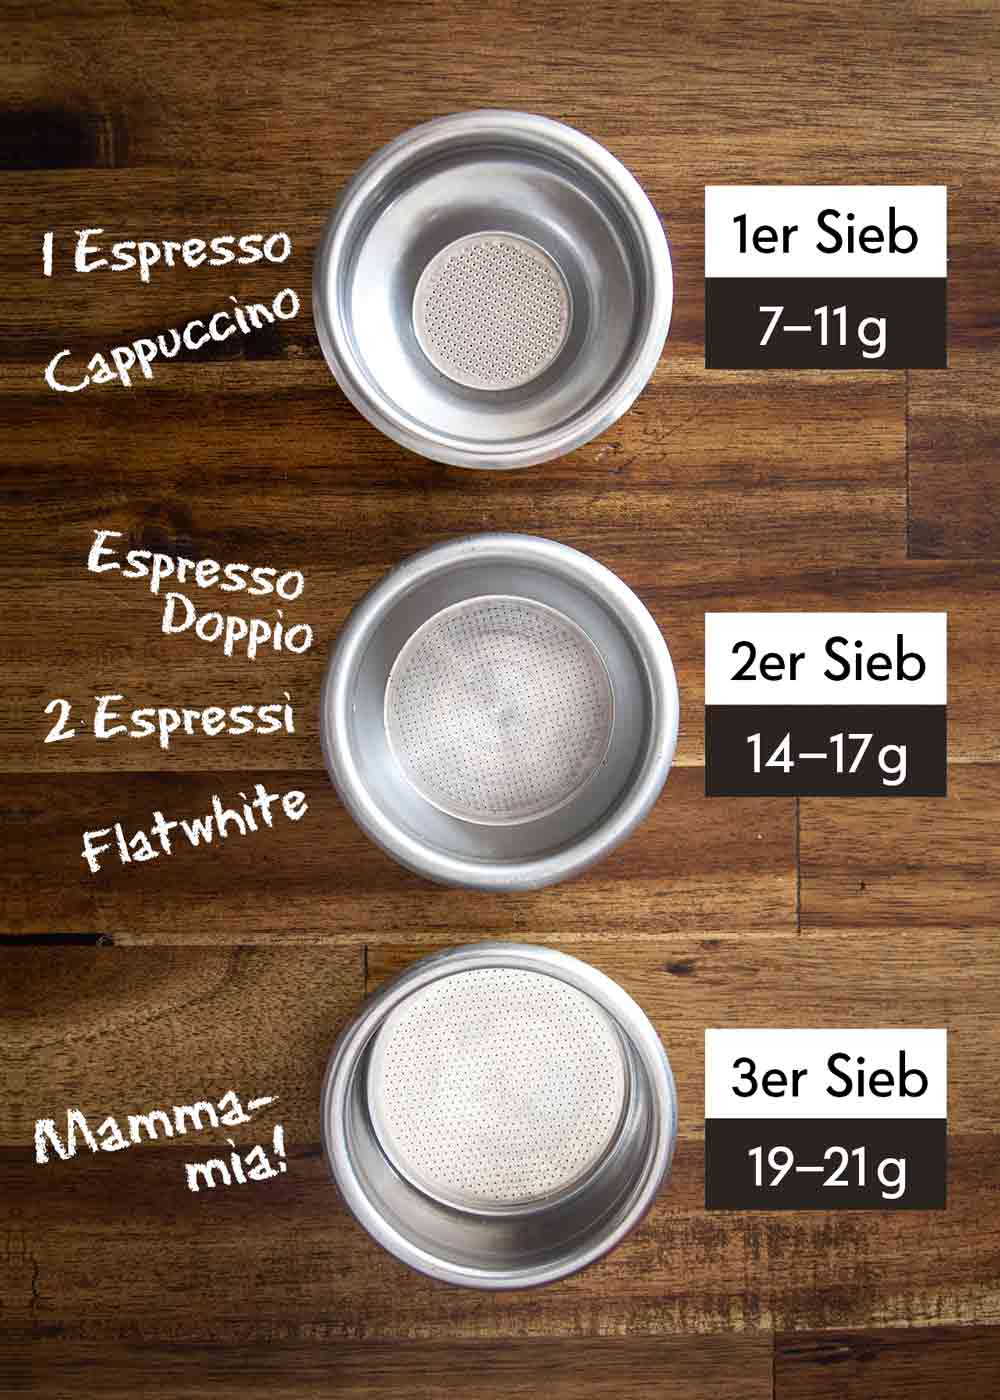 Emaille Tassen: Nostalgie und Moderne. CafCaf.de – Kaffee & Blog, Kaffeeblog